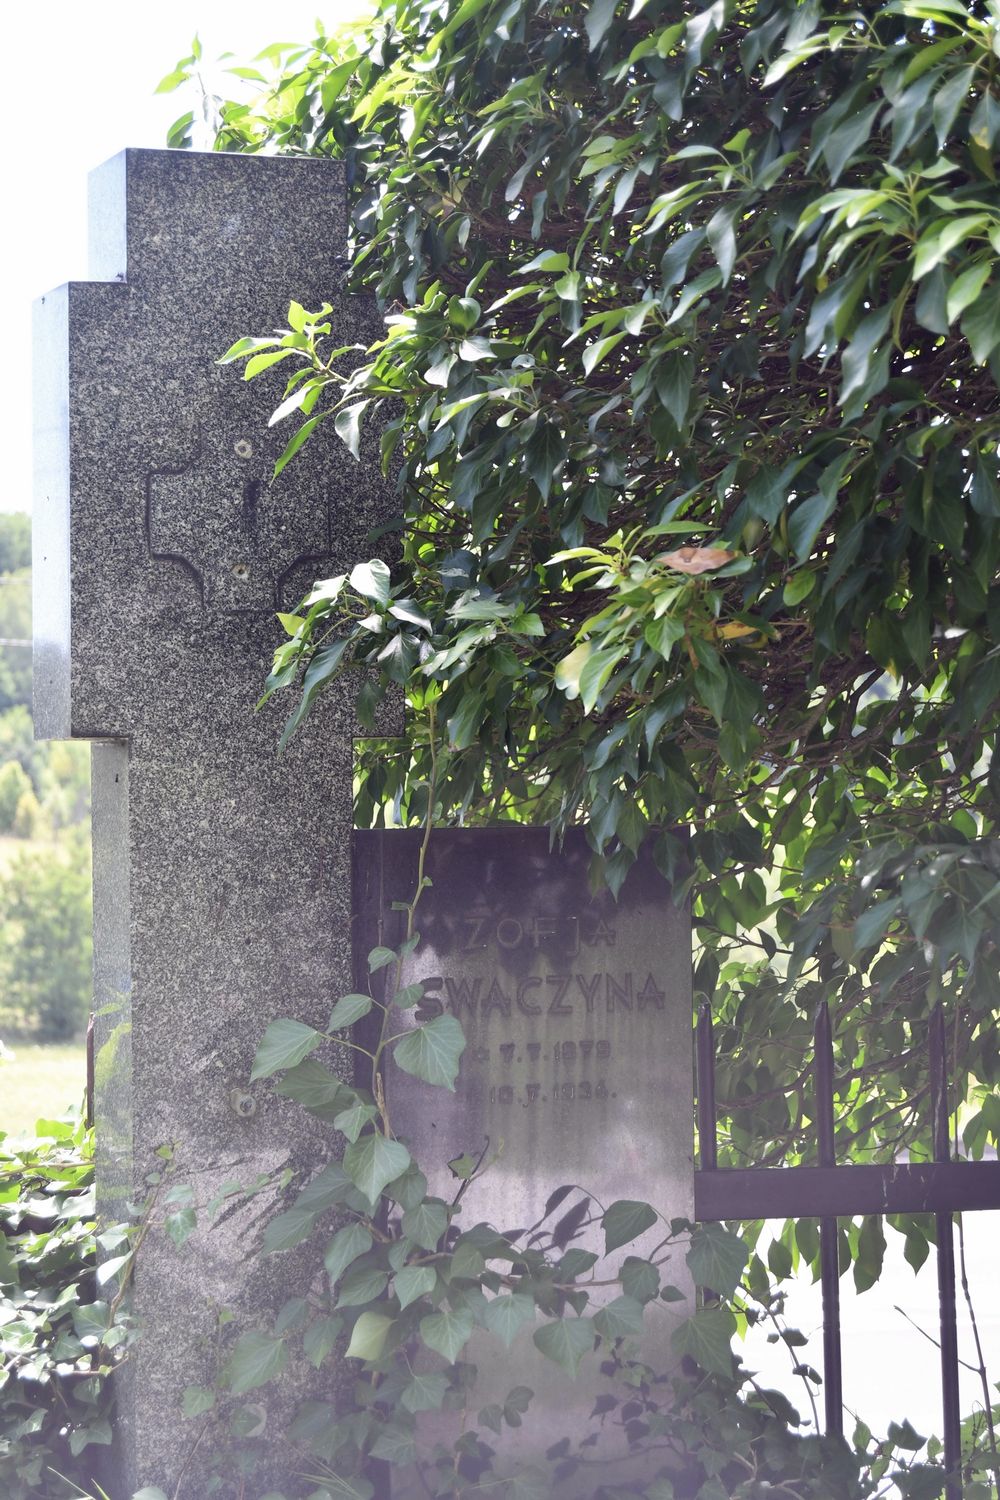 Fotografia przedstawiająca Tombstone of Zofia Swaczyna